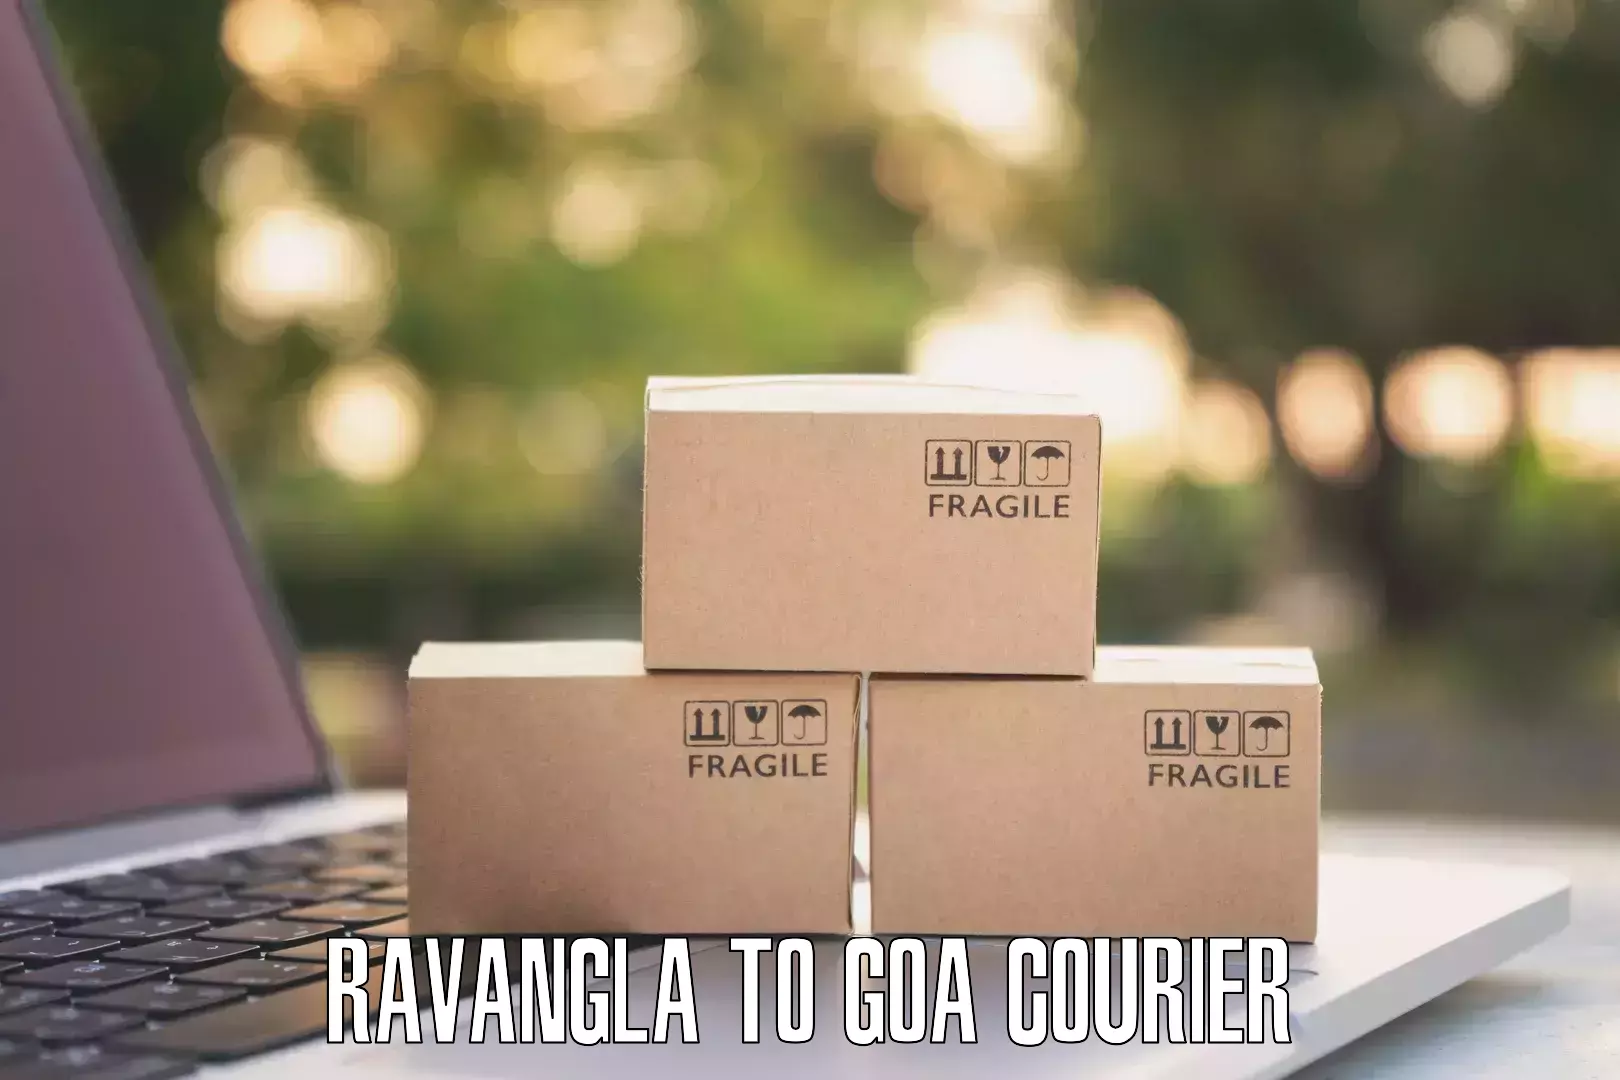 Easy return solutions Ravangla to NIT Goa